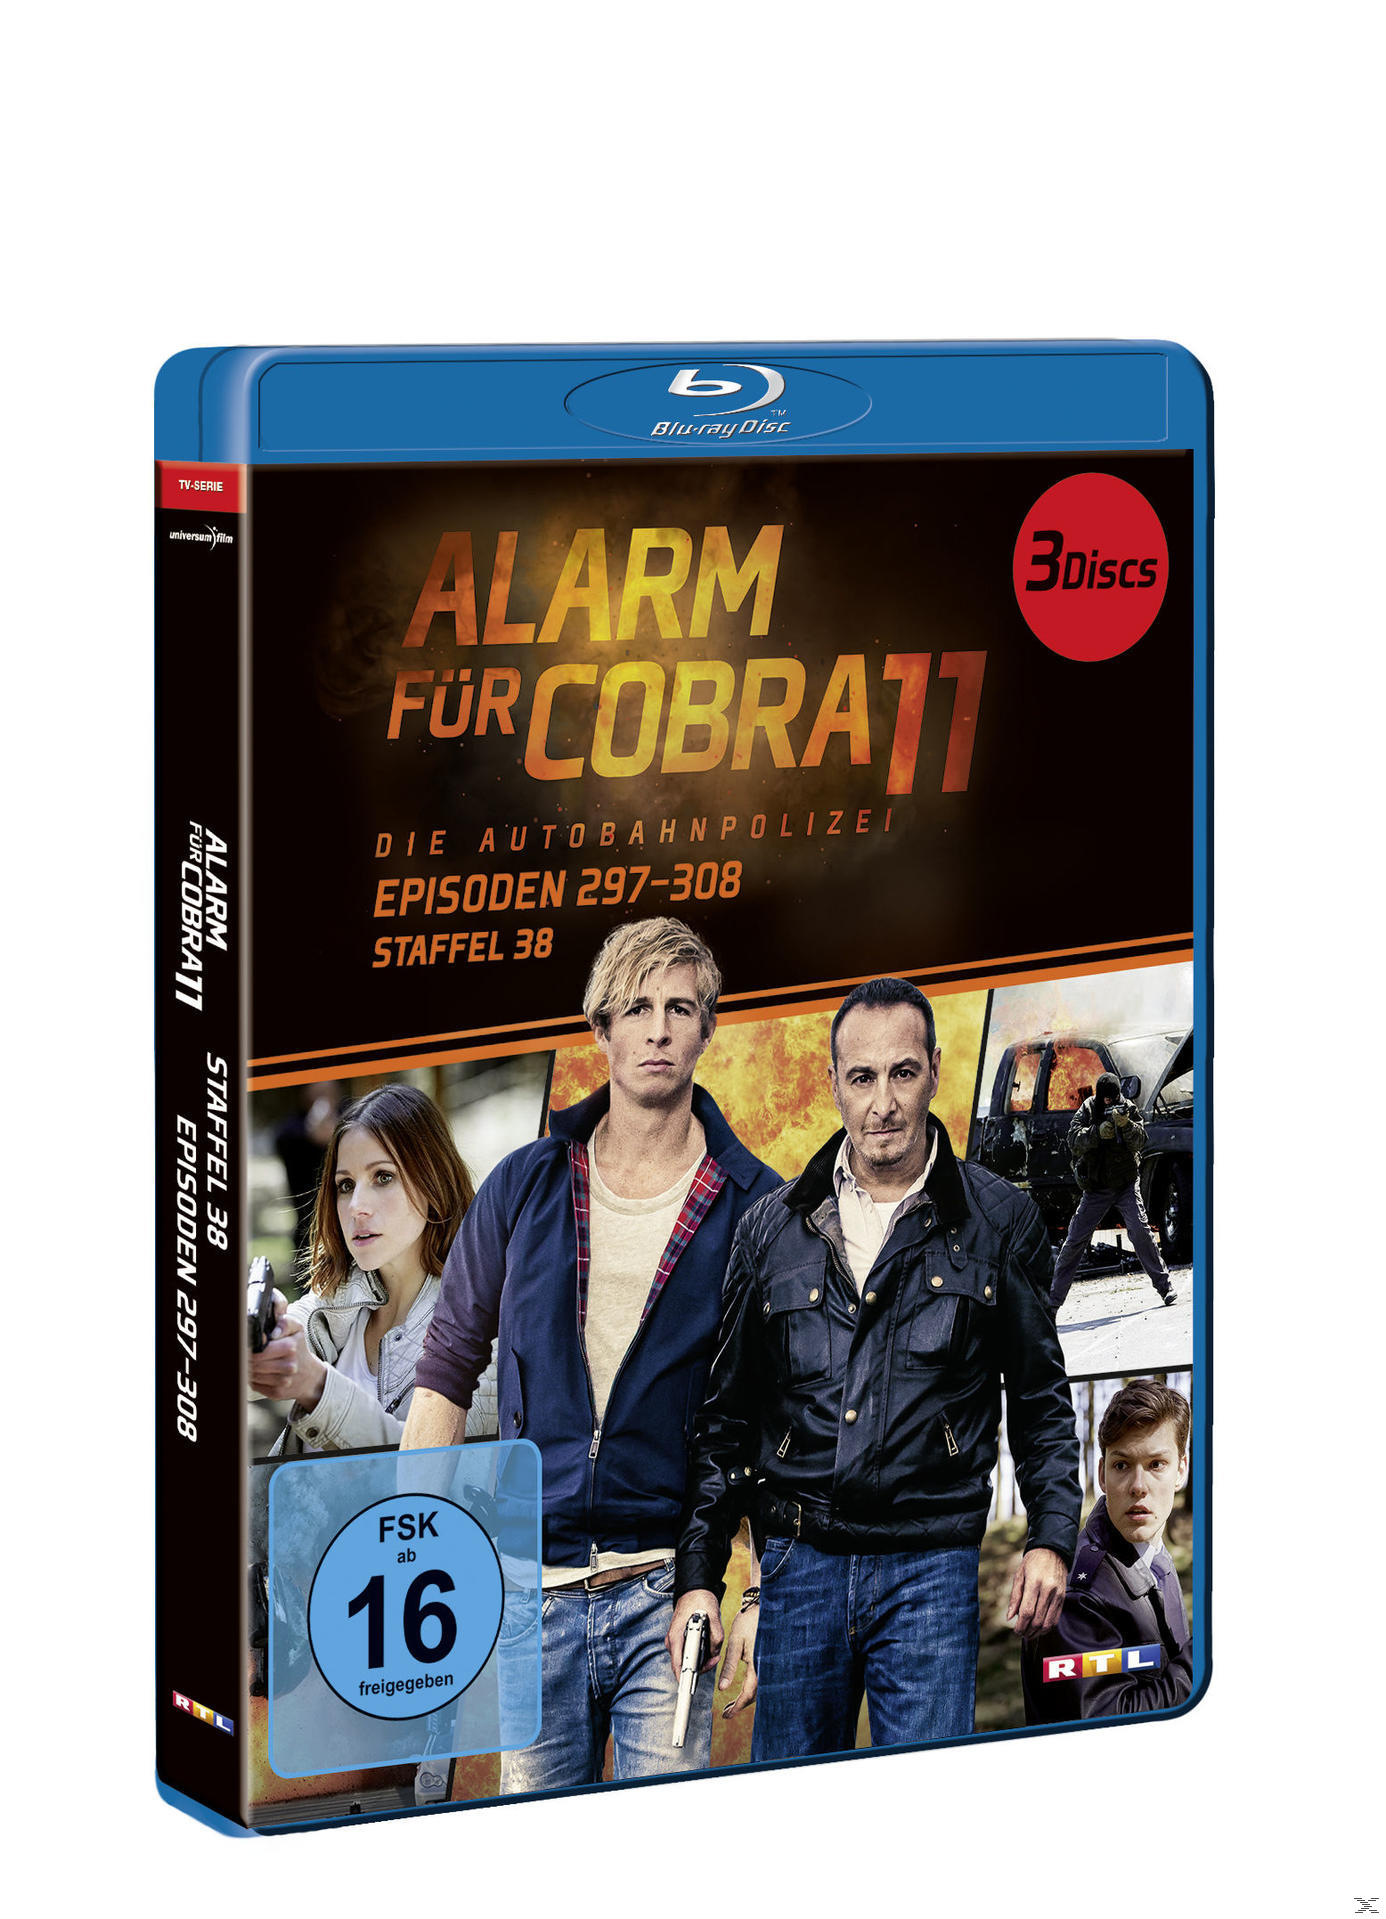 Cobra Blu-ray 38 11 Alarm - Staffel für